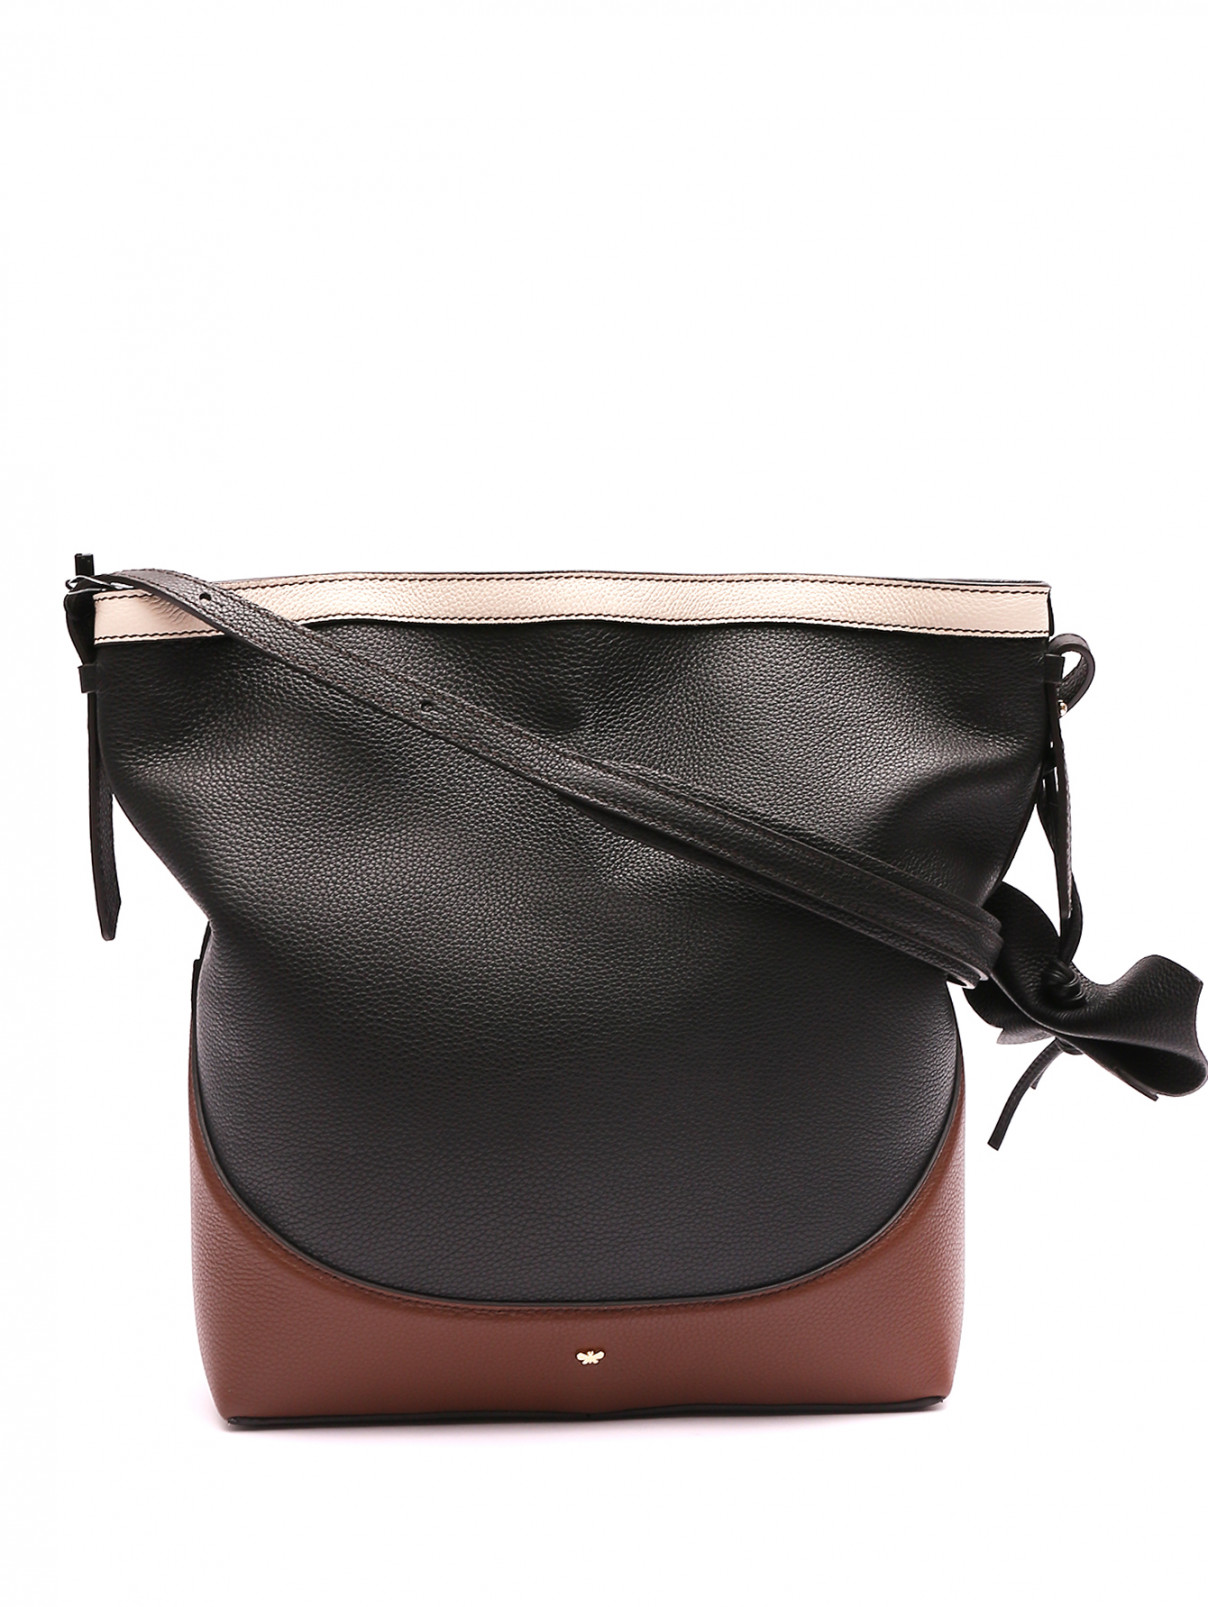 Комбинированная сумка из кожи Weekend Max Mara  –  Общий вид  – Цвет:  Черный